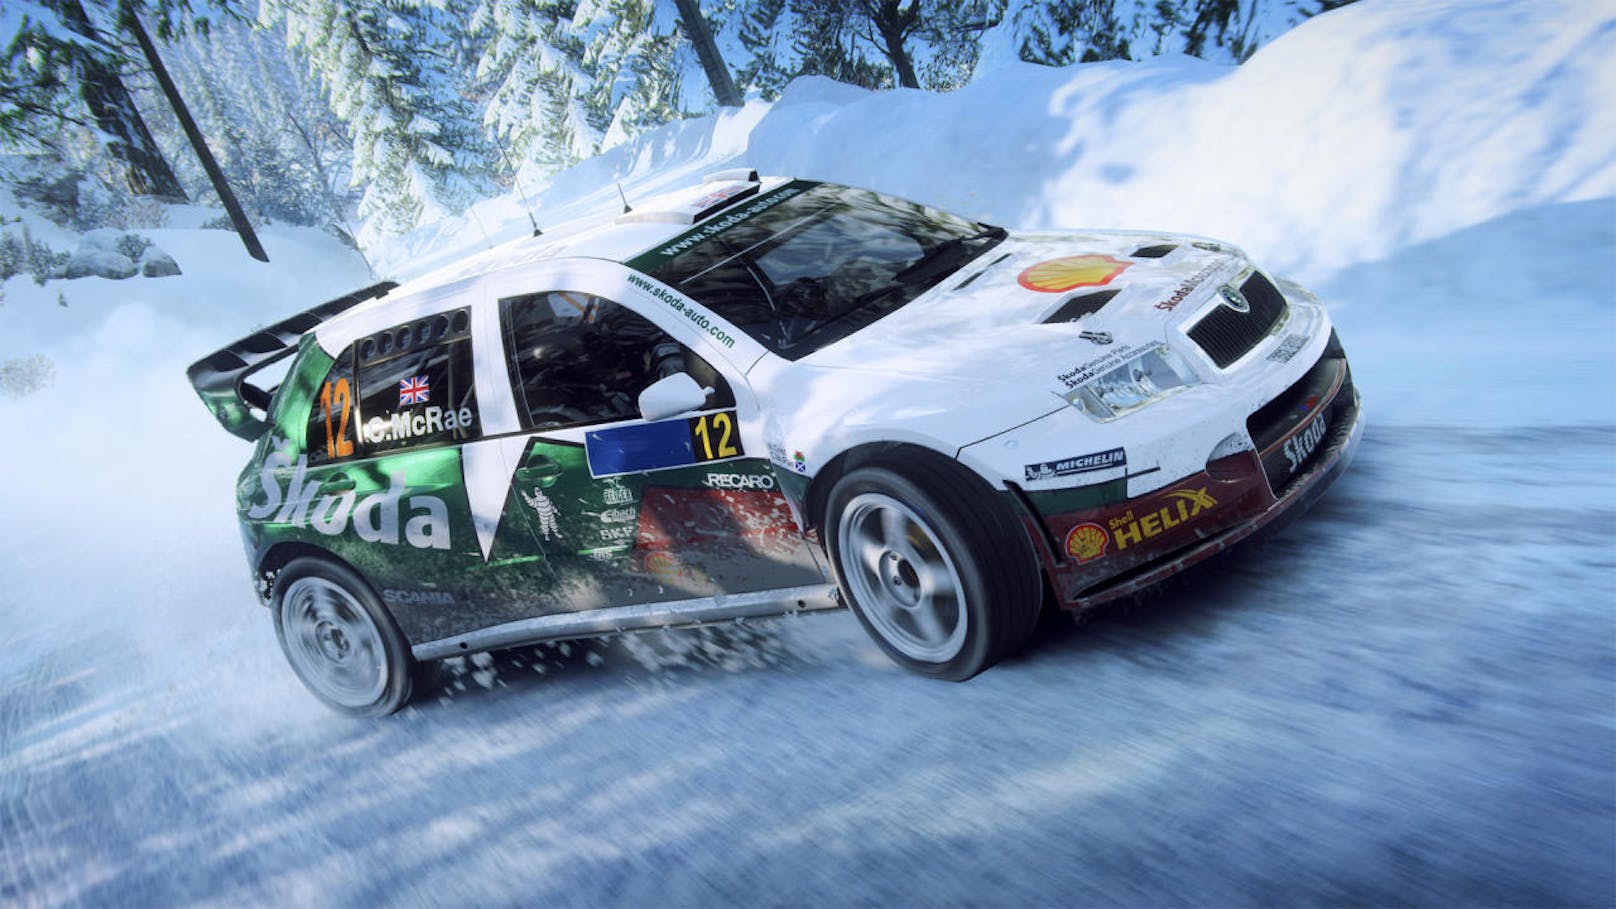 <b>16. Juni 2019:</b> Codemasters veröffentlicht einen neuen Trailer zum Rallye-Spektakel Dirt Rally 2.0, das bereits für PlayStation 4, die Xbox One Gerätefamilie inklusive der Xbox One X sowie PC im Handel verfügbar ist. Das Video stellt die neue Strecke der Latvia-RX-Rallyeserie vor. Die Serie wird seit 2016 ausgetragen und findet in diesem Jahr vom 14. bis 15. September in Riga statt. <a href="https://www.youtube.com/watch?v=BMdEmTdJw10">Der Trailer bei YouTube.</a>